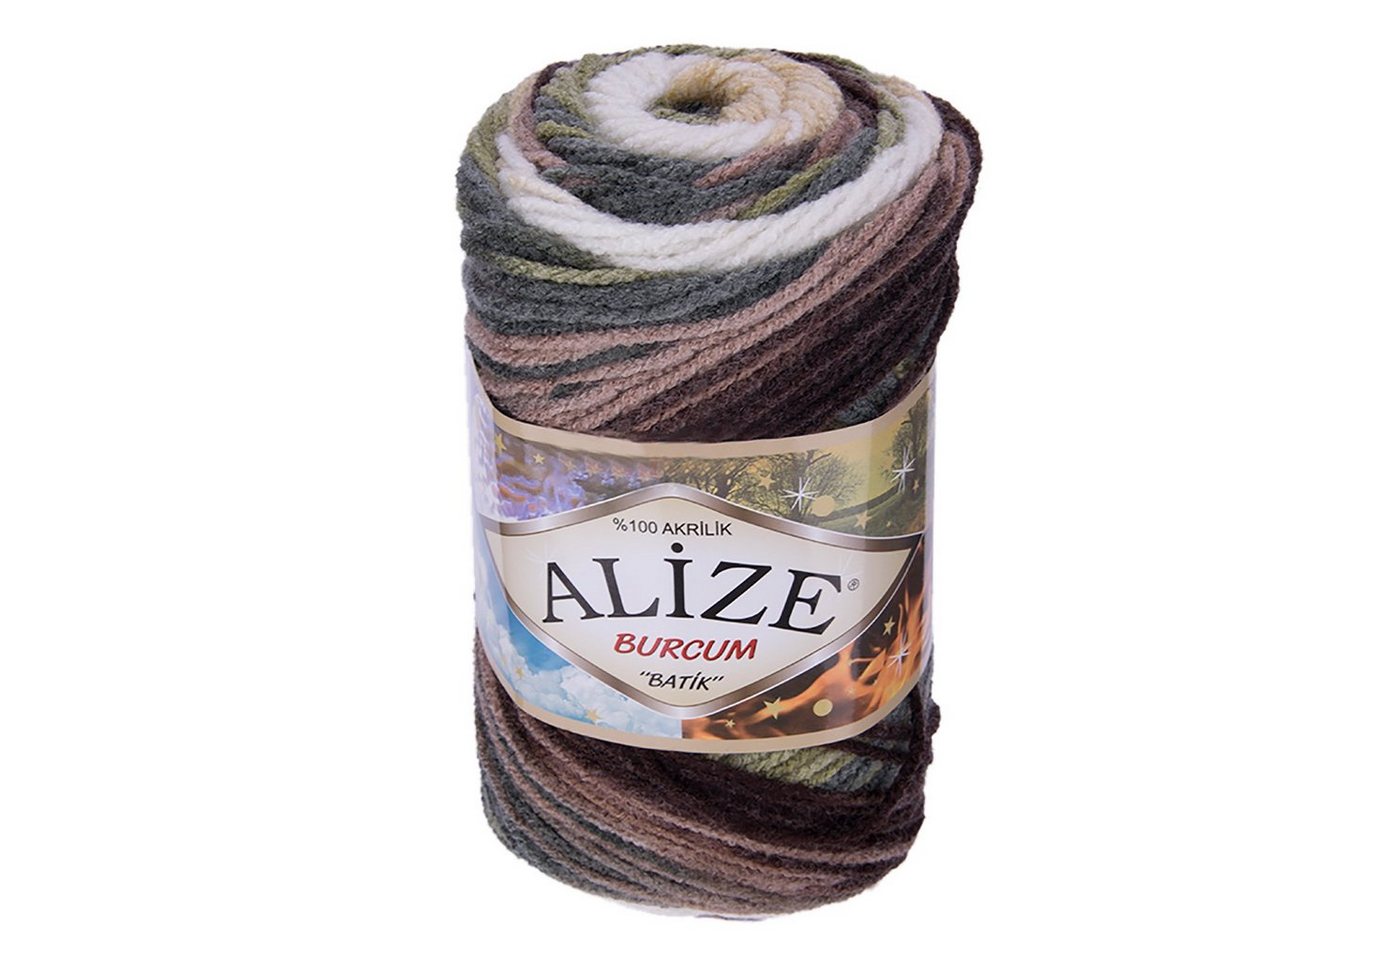 Alize 500g Strickgarn ALIZE BURCUM Batik Wolle Winter Handstrickgarn Effektgarn, 1050 m, 1893 von Alize